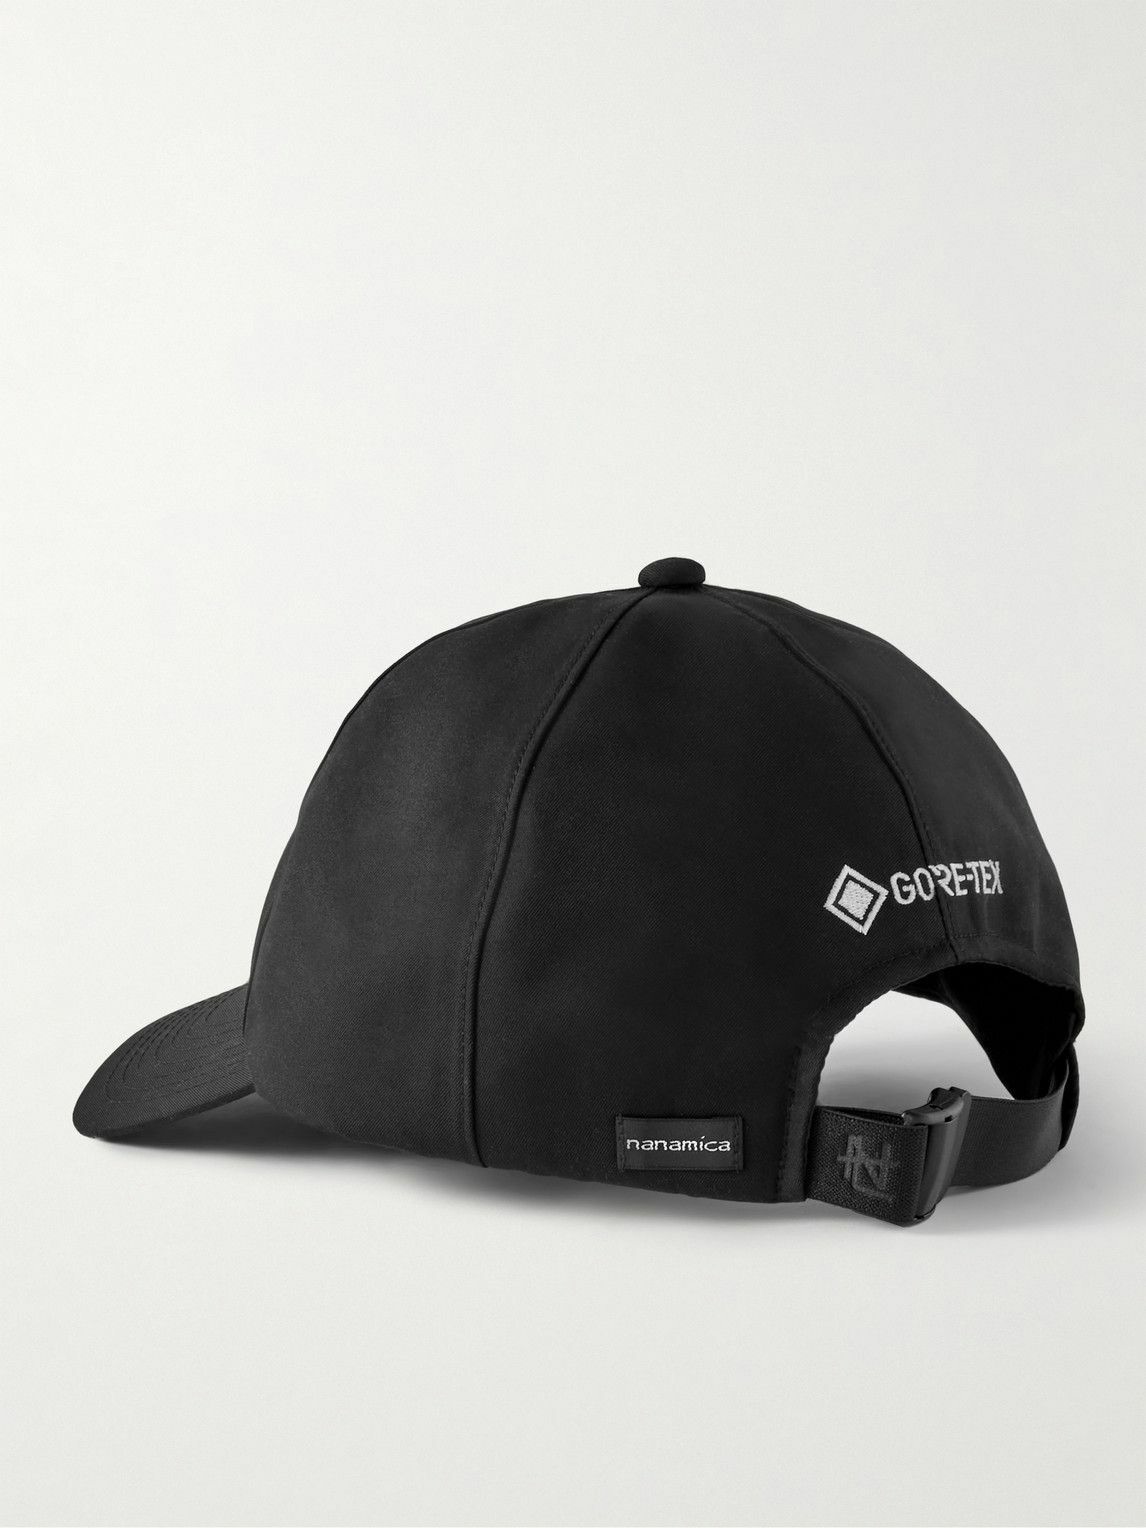 nanamica × NEW ERA GORE-TEX 59FIFTY キャップ - 帽子